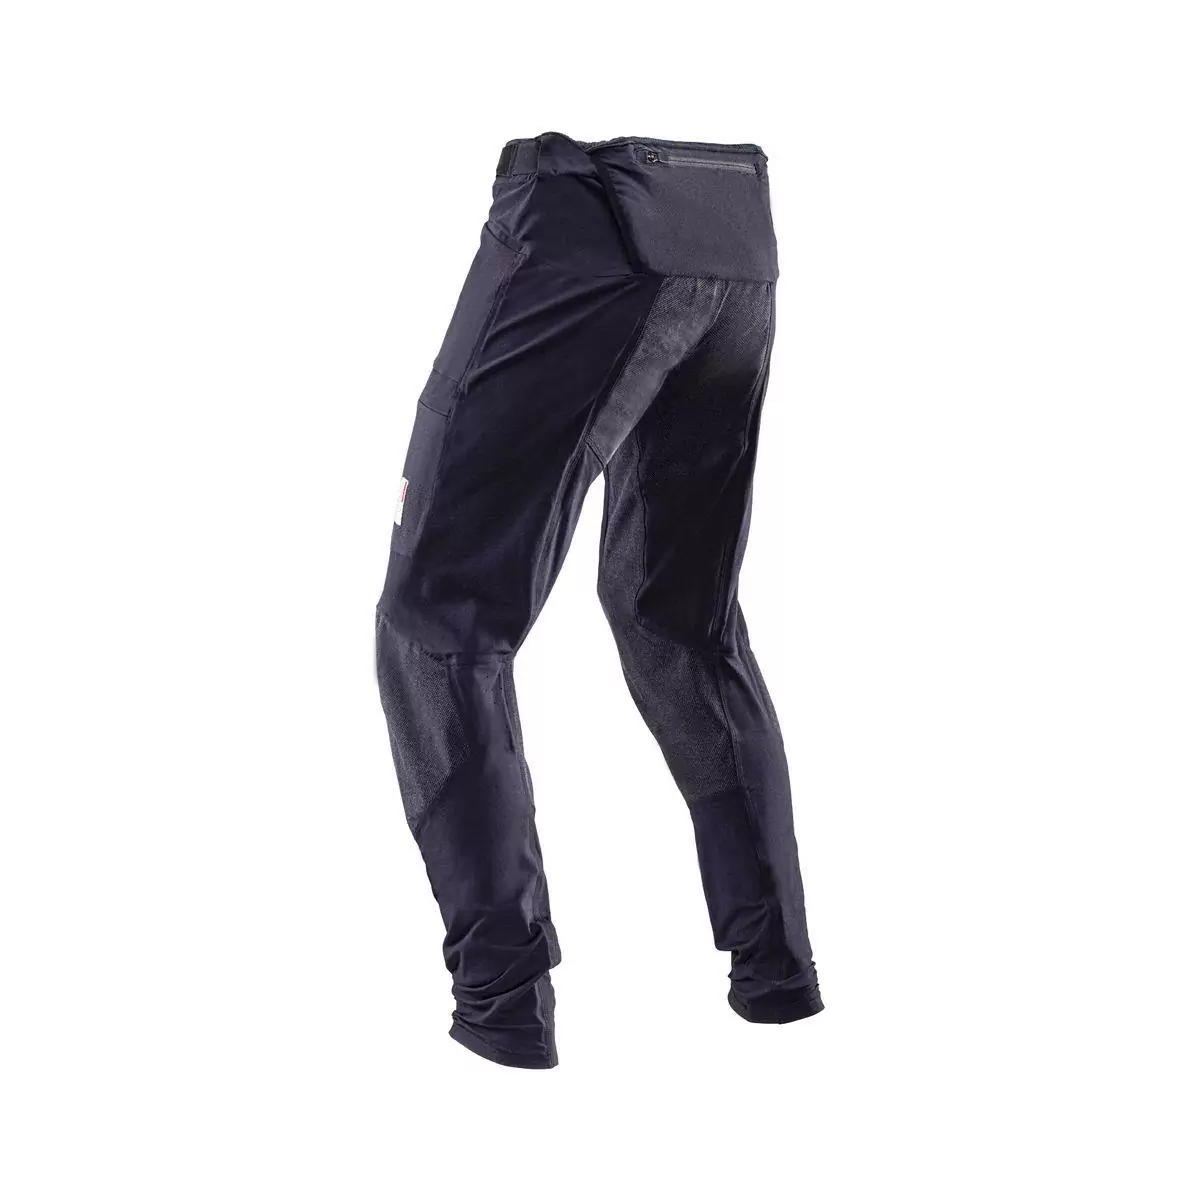 Pantalones MTB Allmtn 4.0 Largos Negro Talla XXXL #1